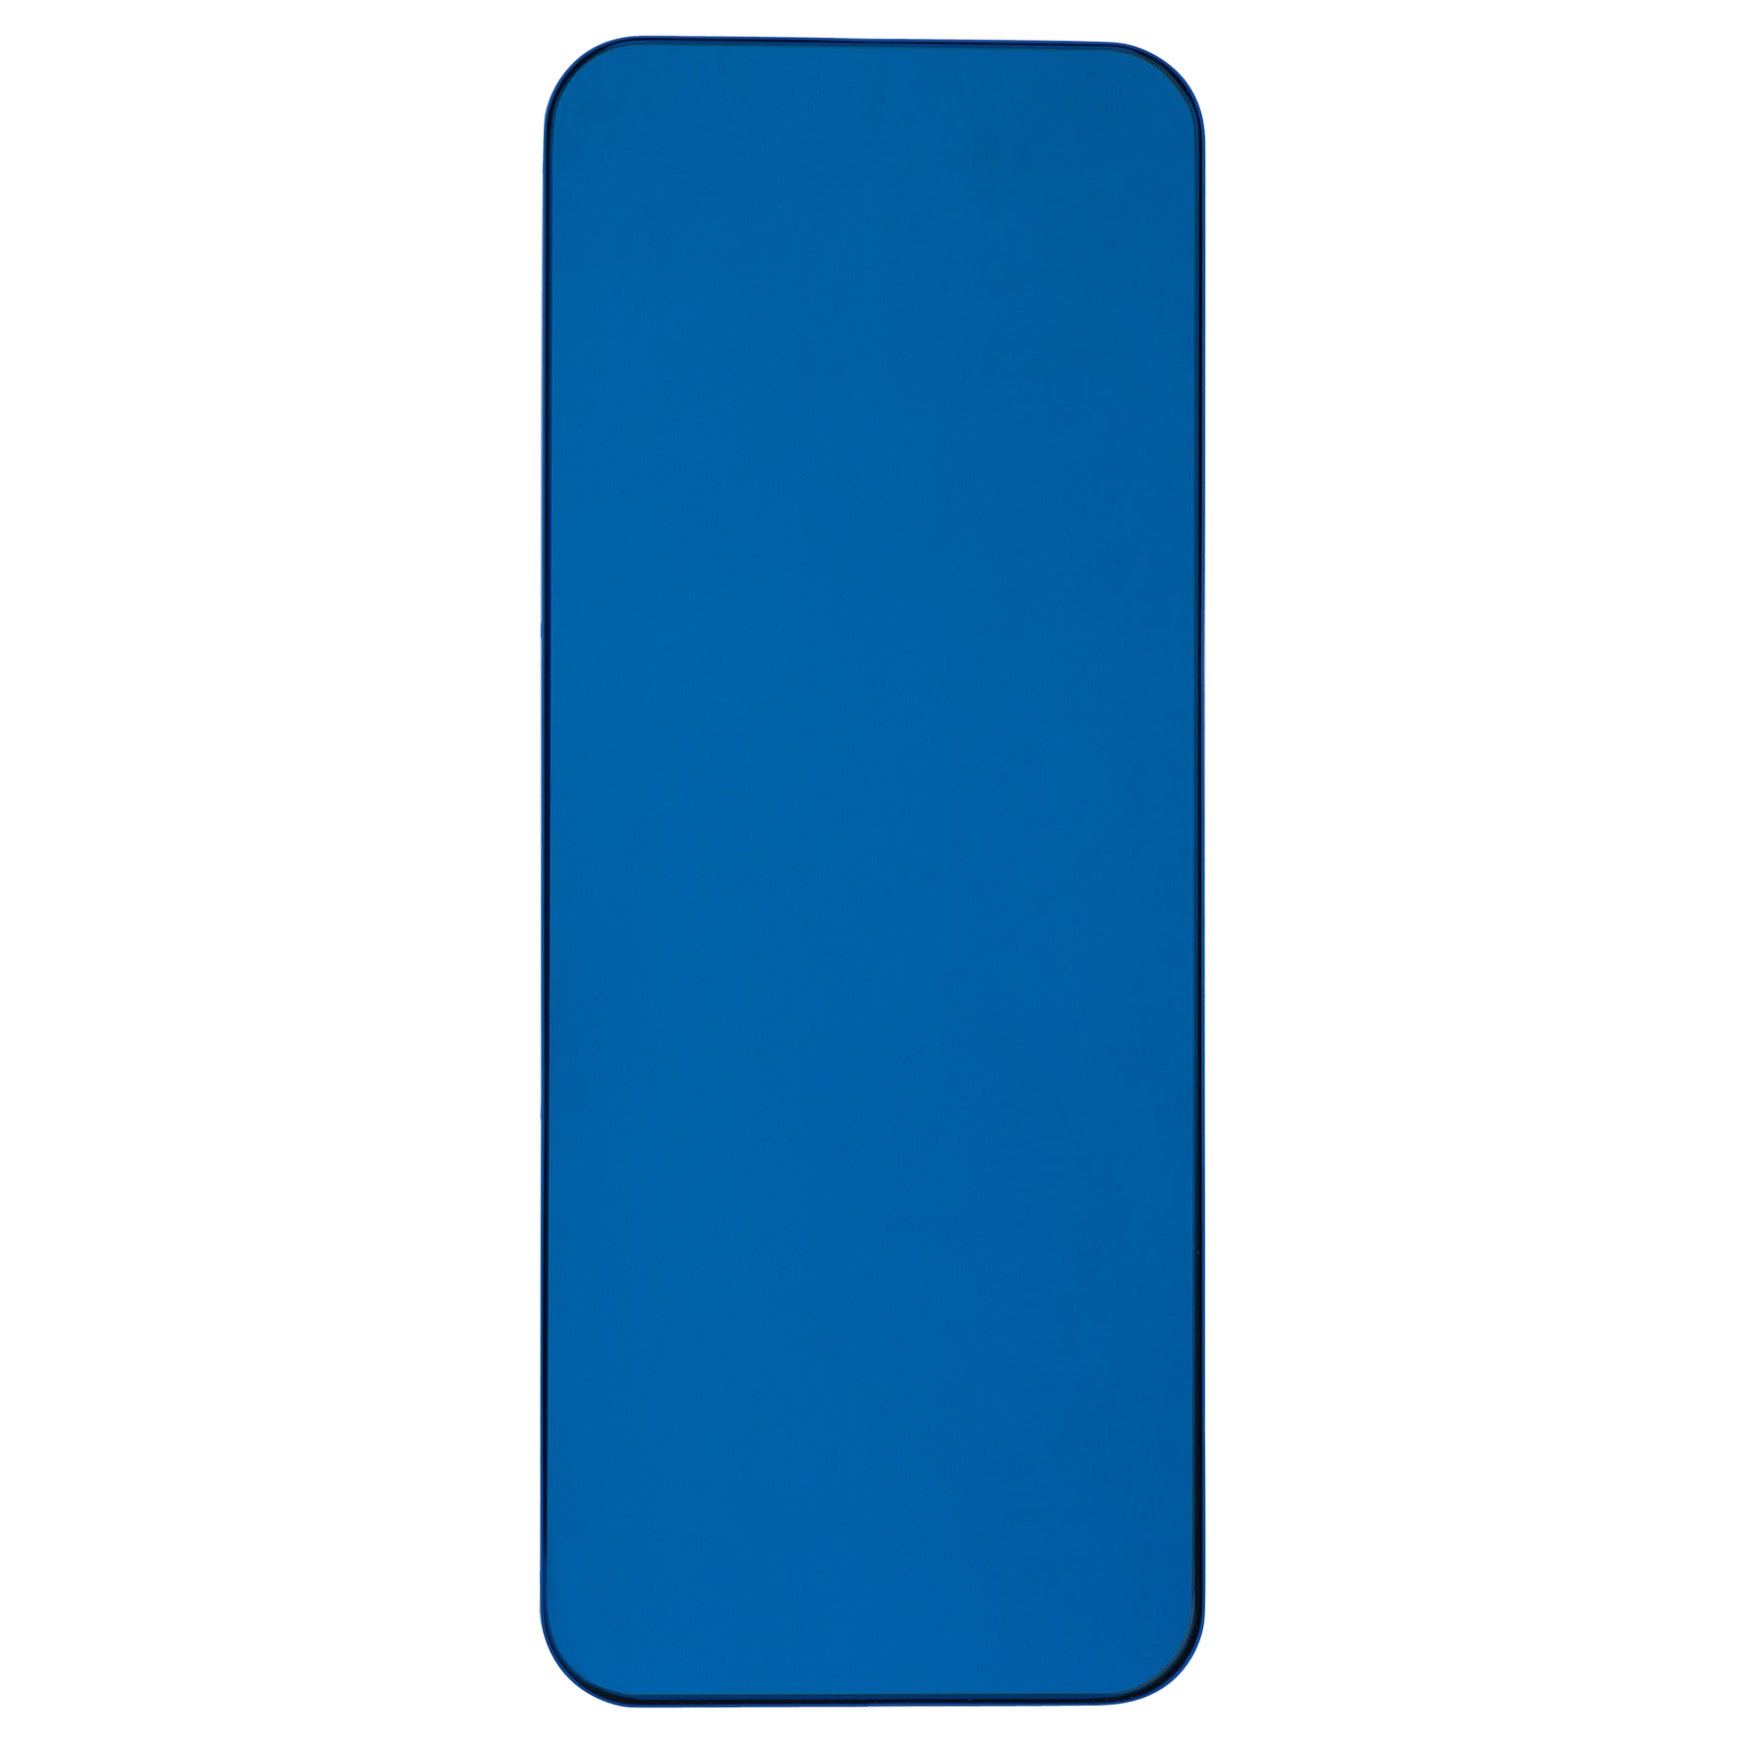 Quadris Rectangular Contemporary Blue Tinted Mirror mit blauem Rahmen, Large